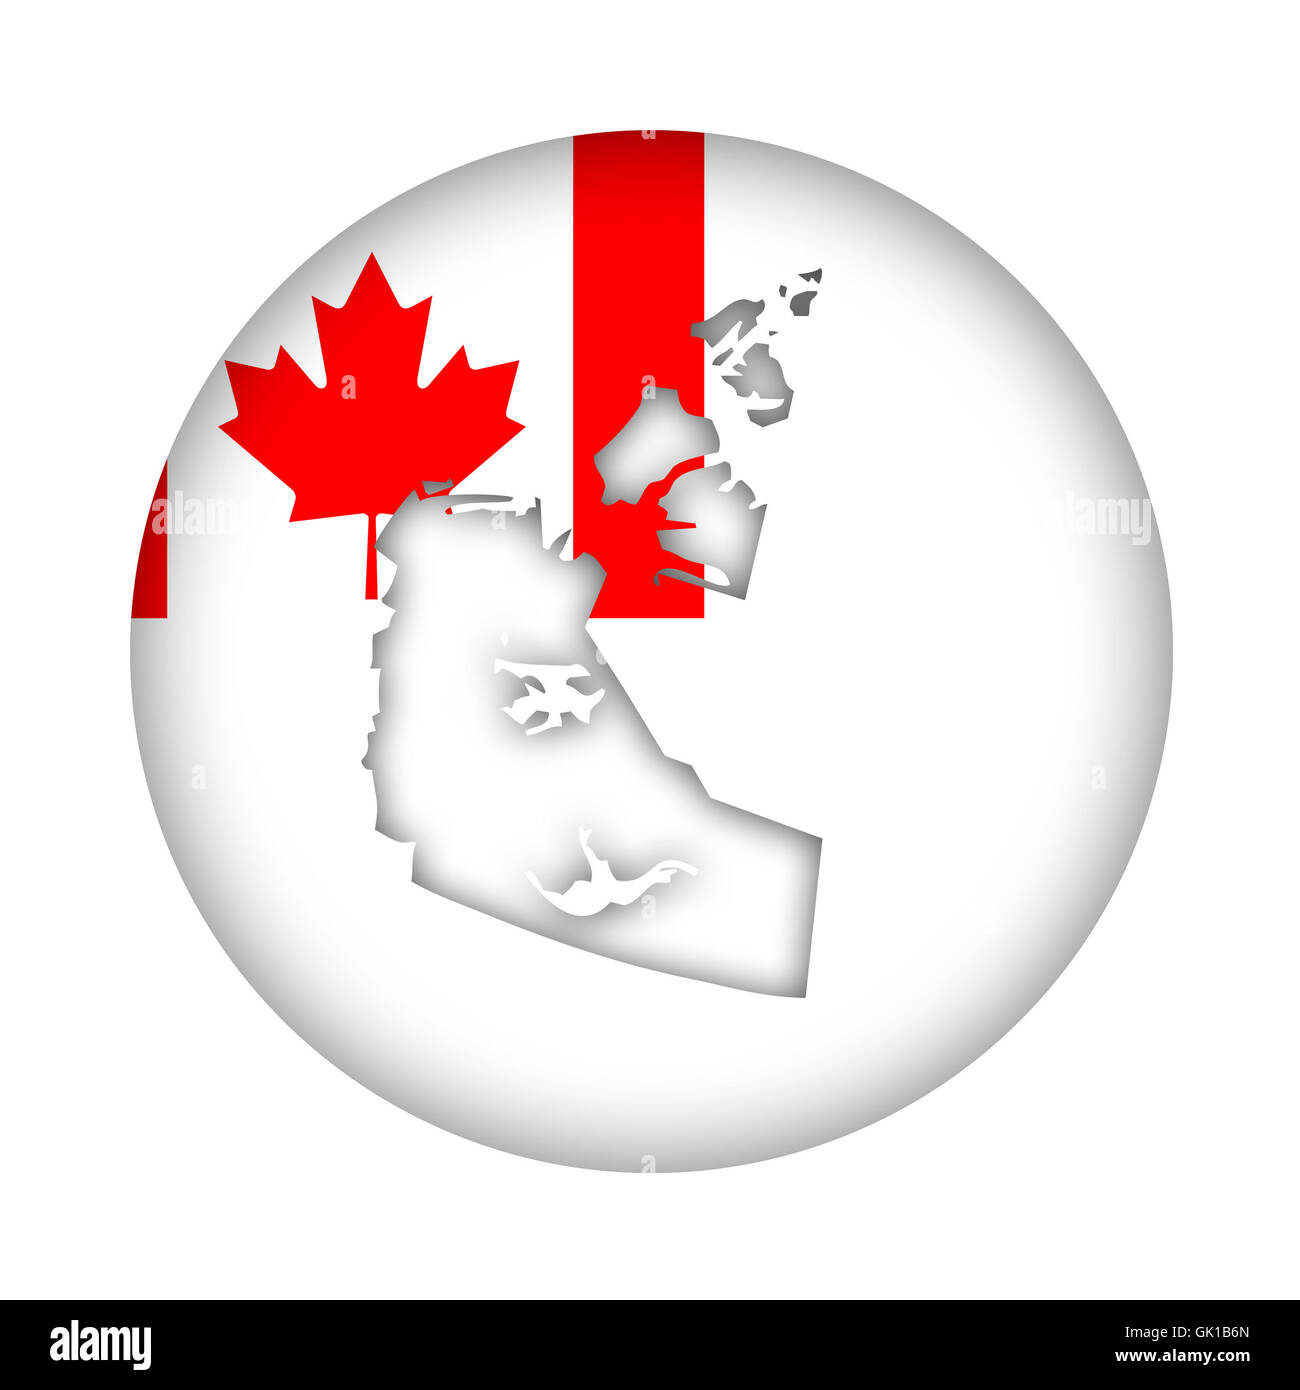 Estado de los Territorios del Noroeste de Canadá mapa botón indicador aislado sobre un fondo blanco. Foto de stock